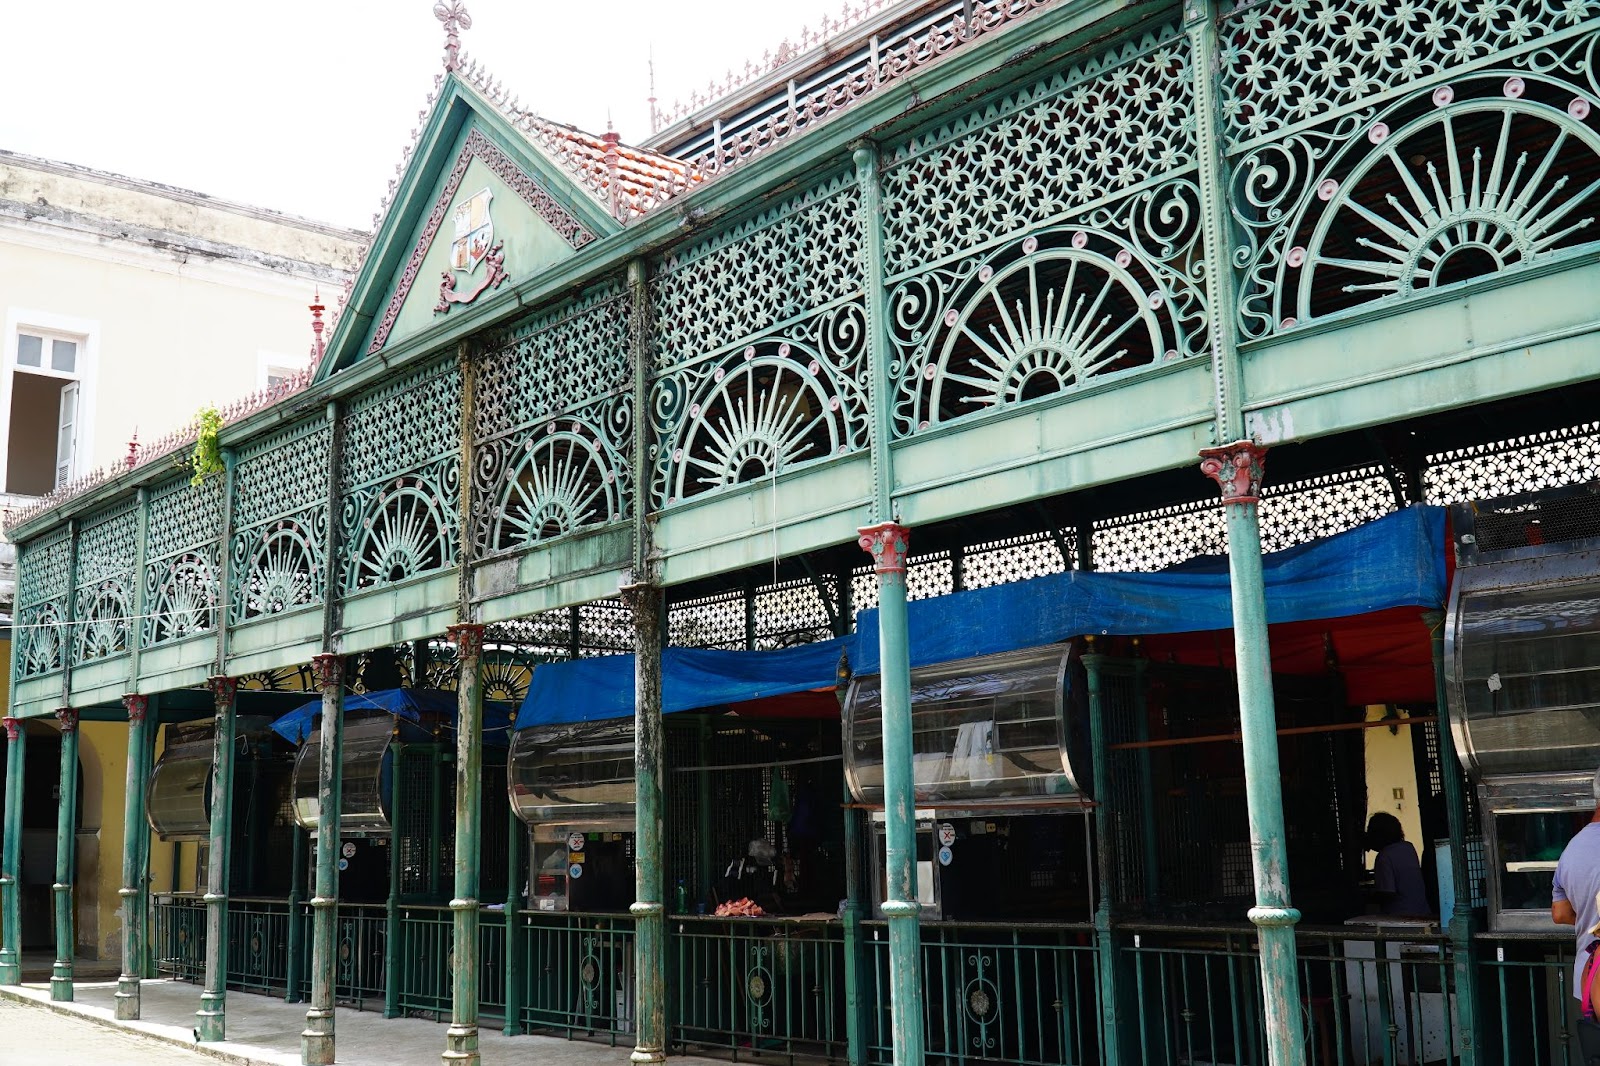 Um dos lados da fachada do Mercado Ver-o-Peso, em Belém. As barraquinhas de vendas são protegidas por um grande telhado de ferro esverdeado com elaborados detalhes vazados